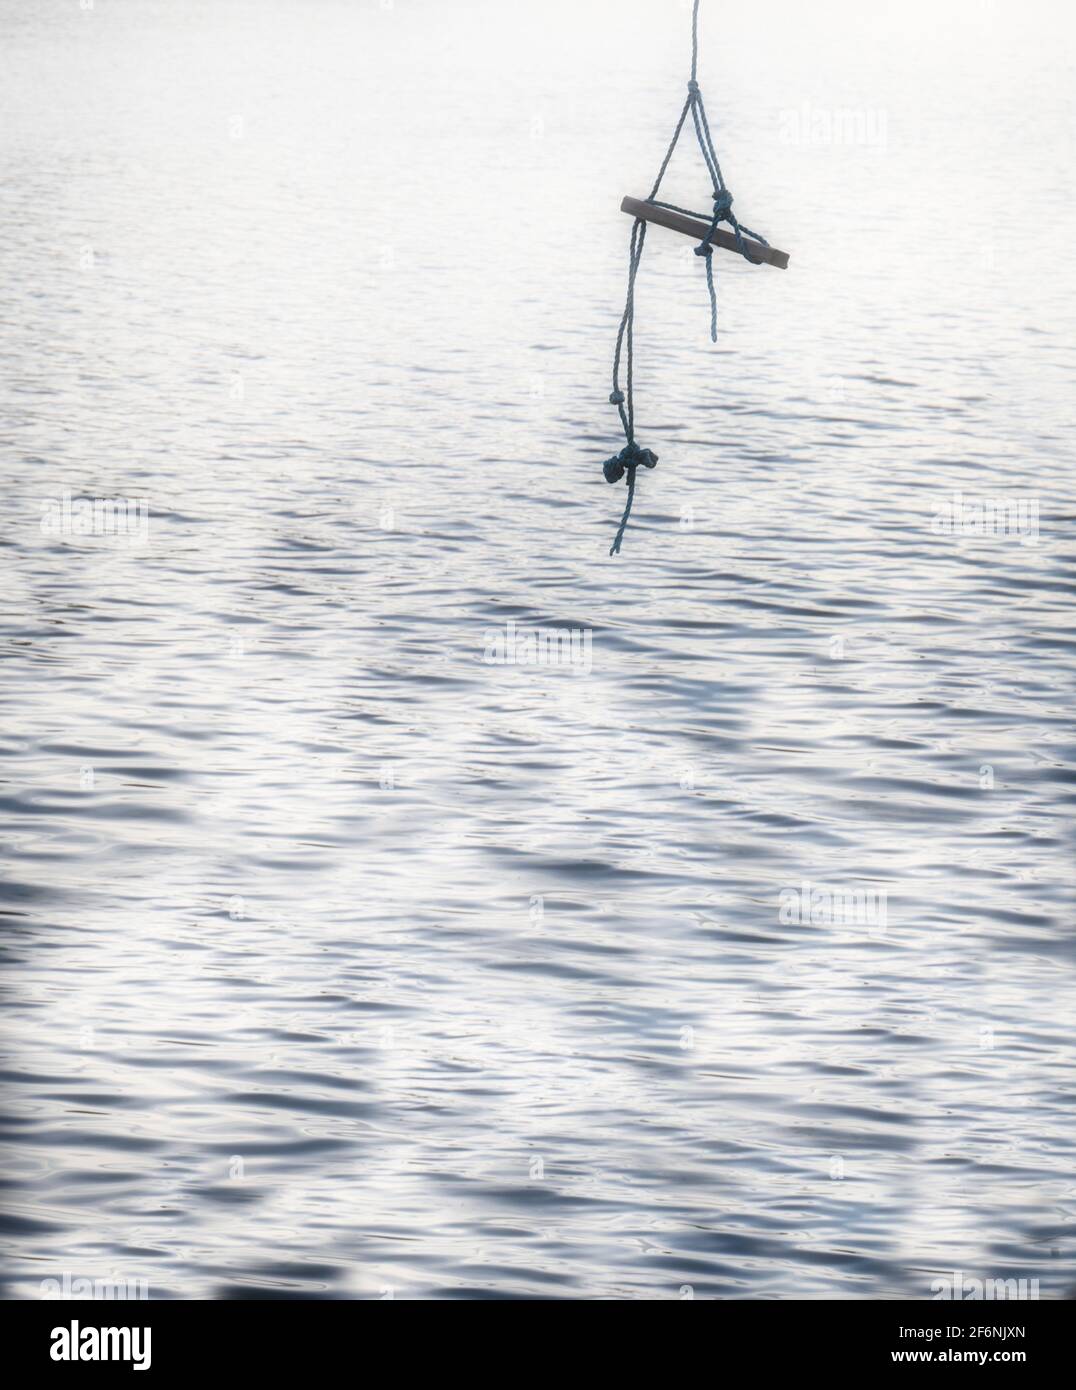 Seilschaukel hängt über dem Wasser. Konzept von sorglos, Freiheit, Eskapismus, Ruhe Stockfoto